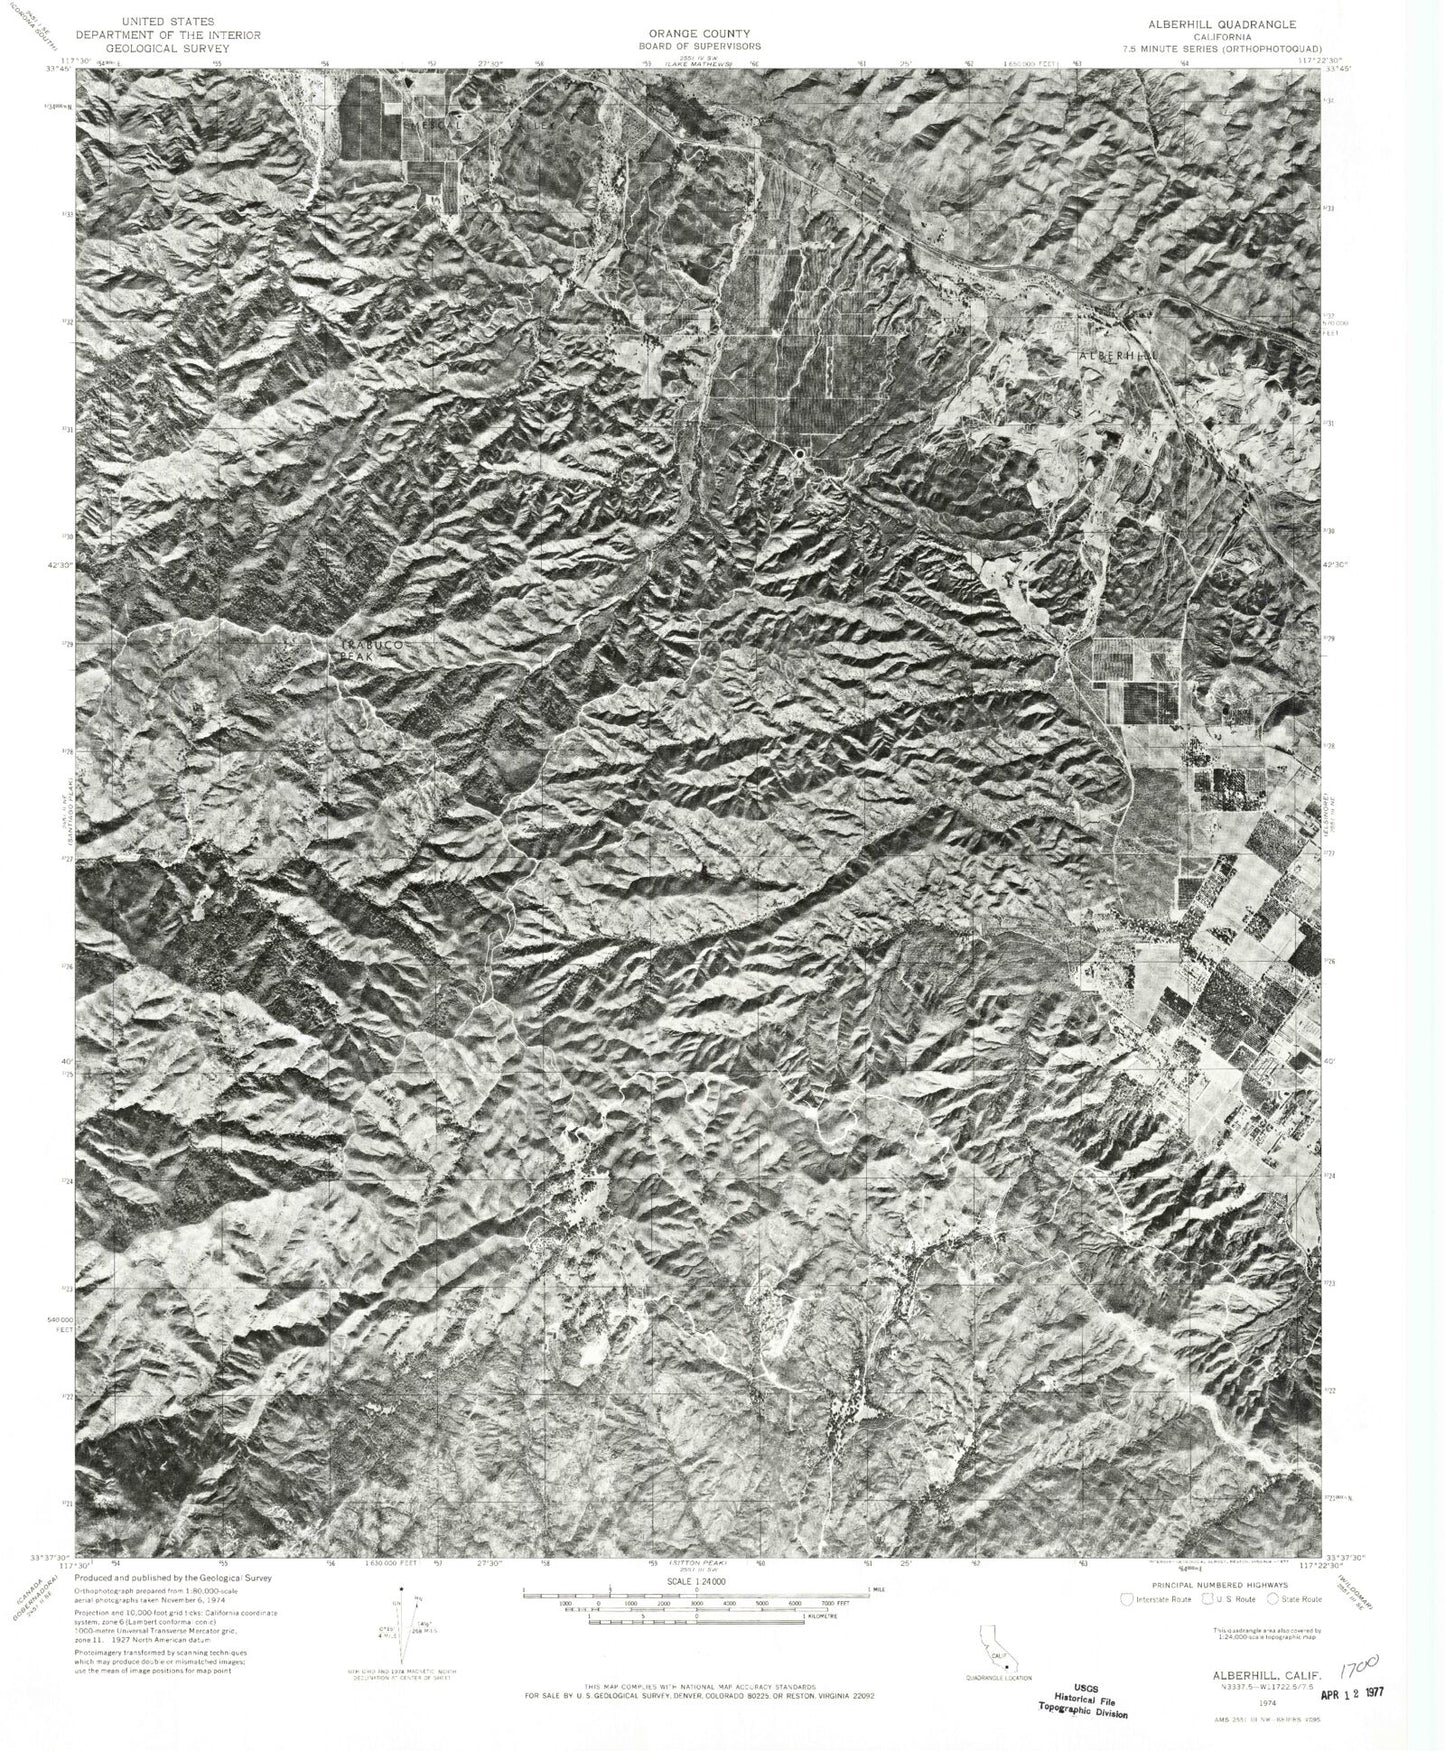 Classic USGS Alberhill California 7.5'x7.5' Topo Map Image